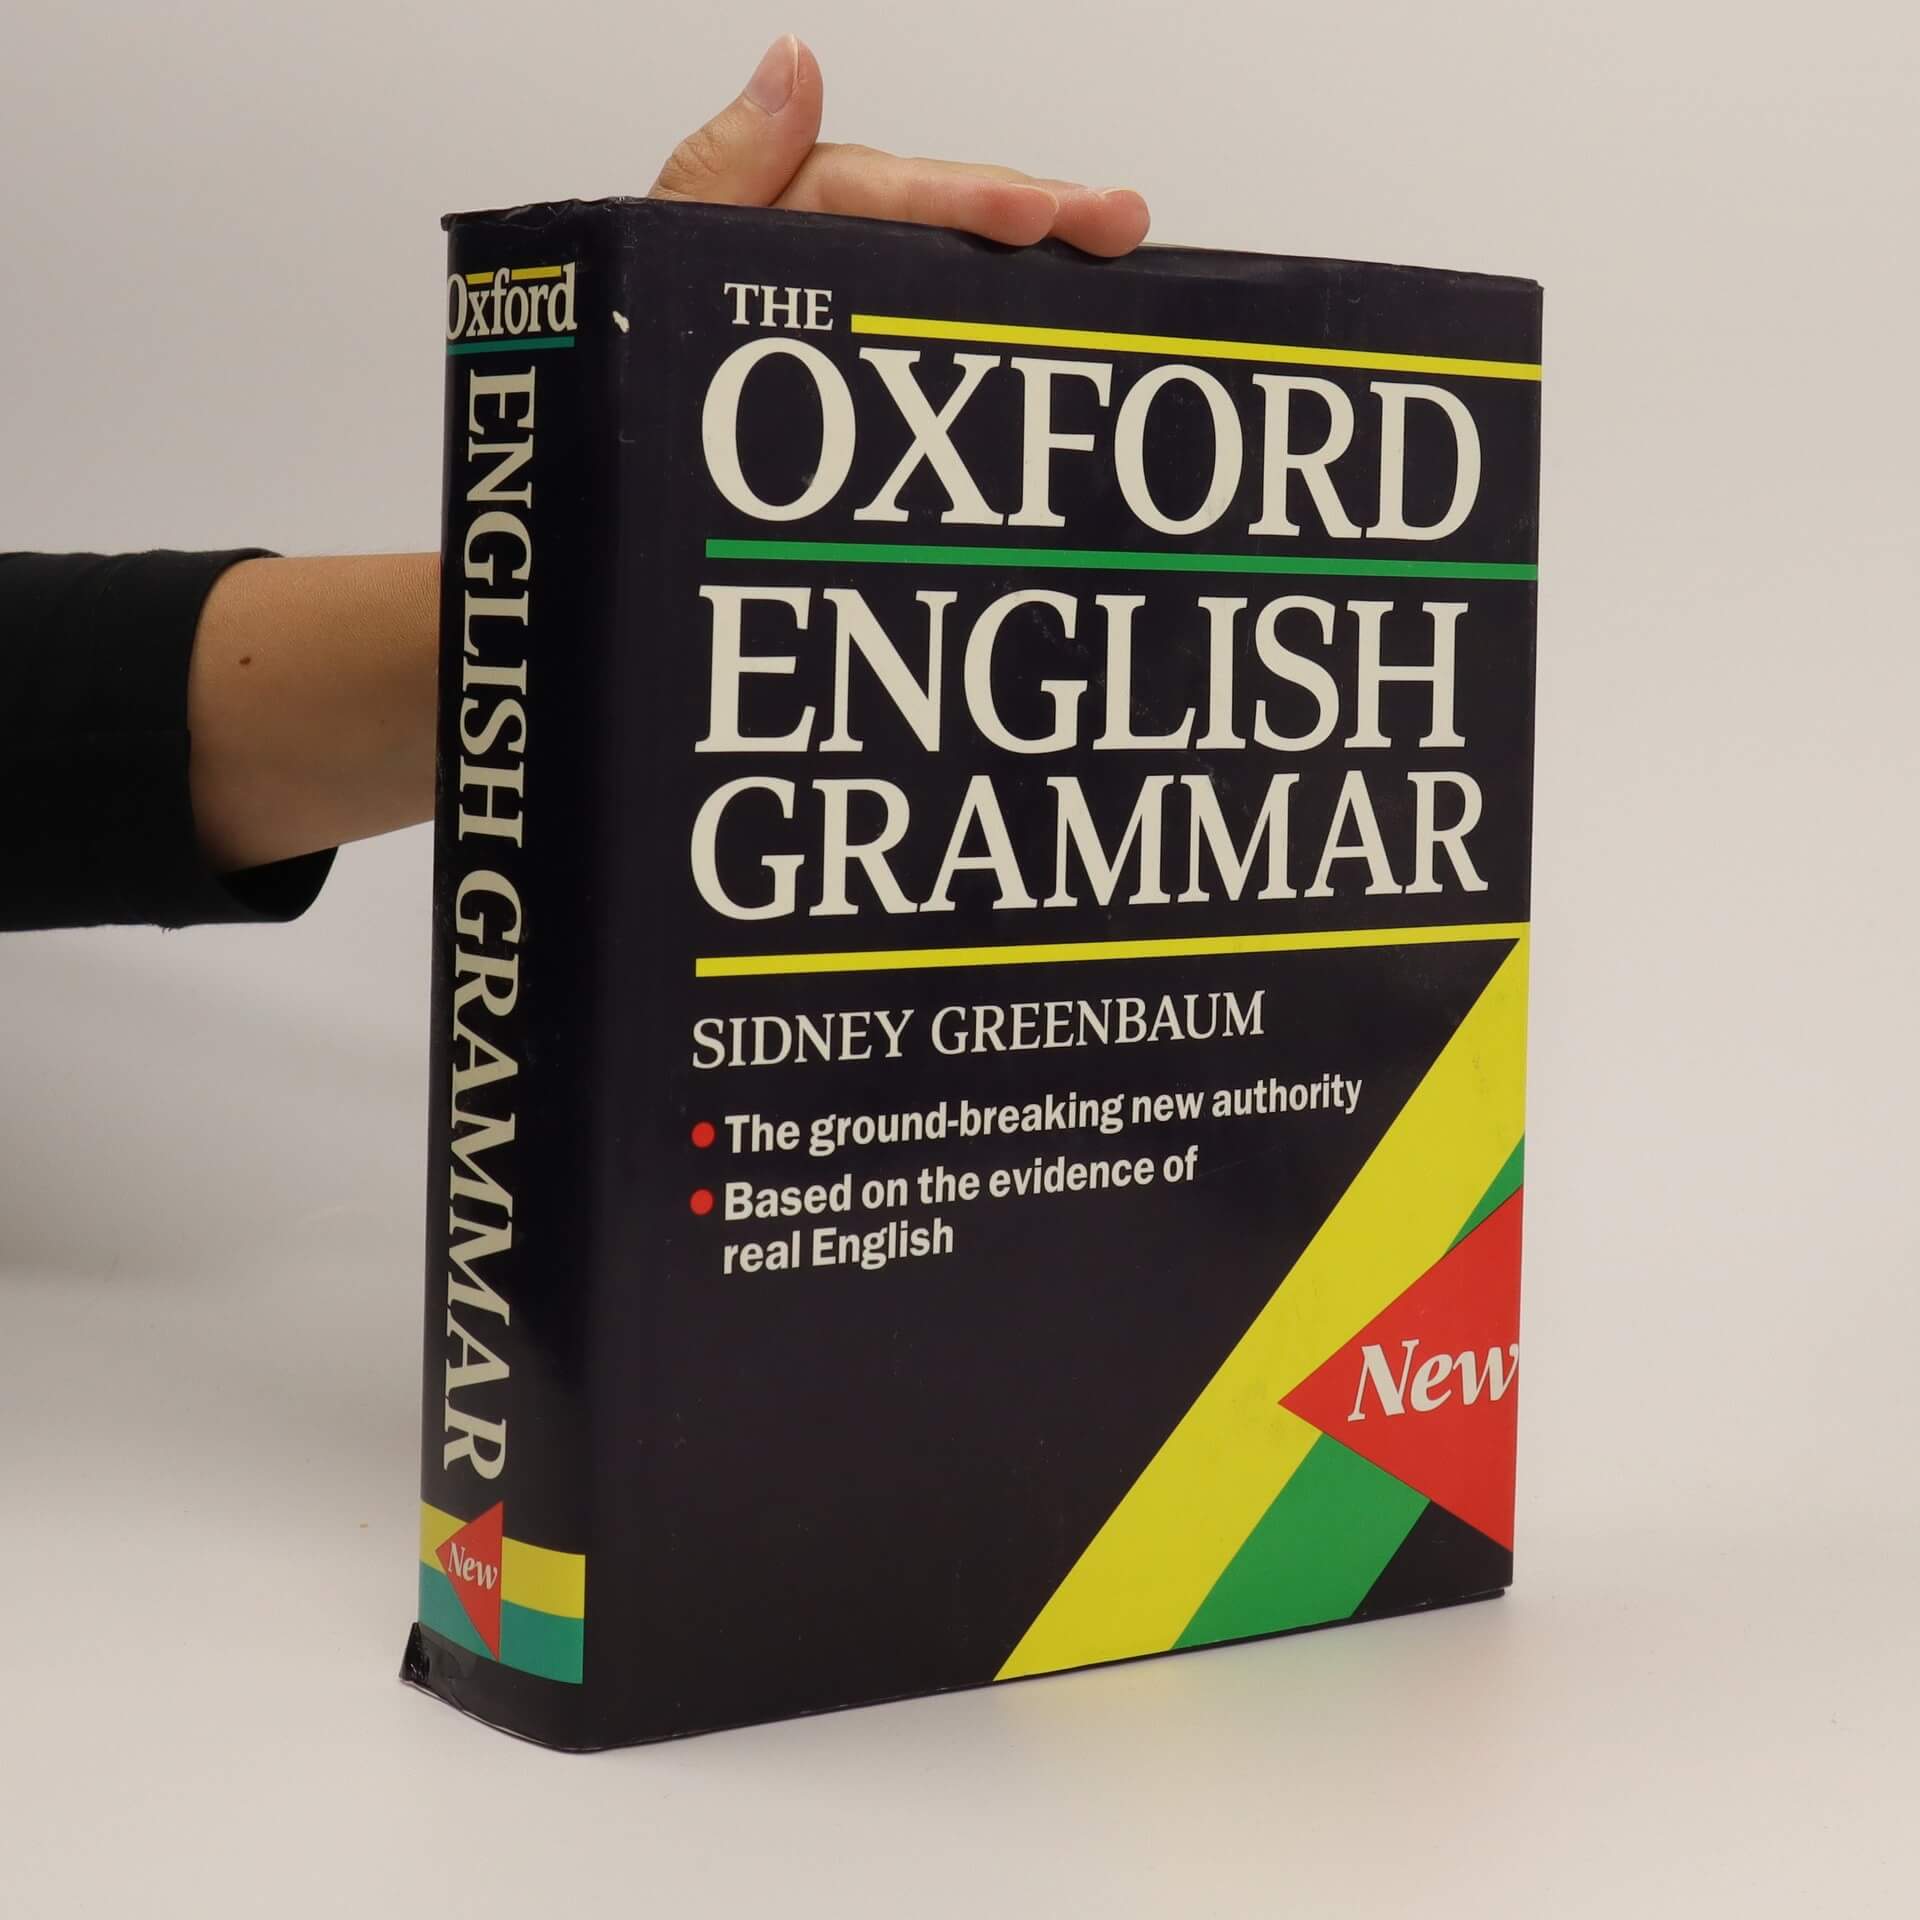 Oxford English Grammar – Sidney Greenbaum